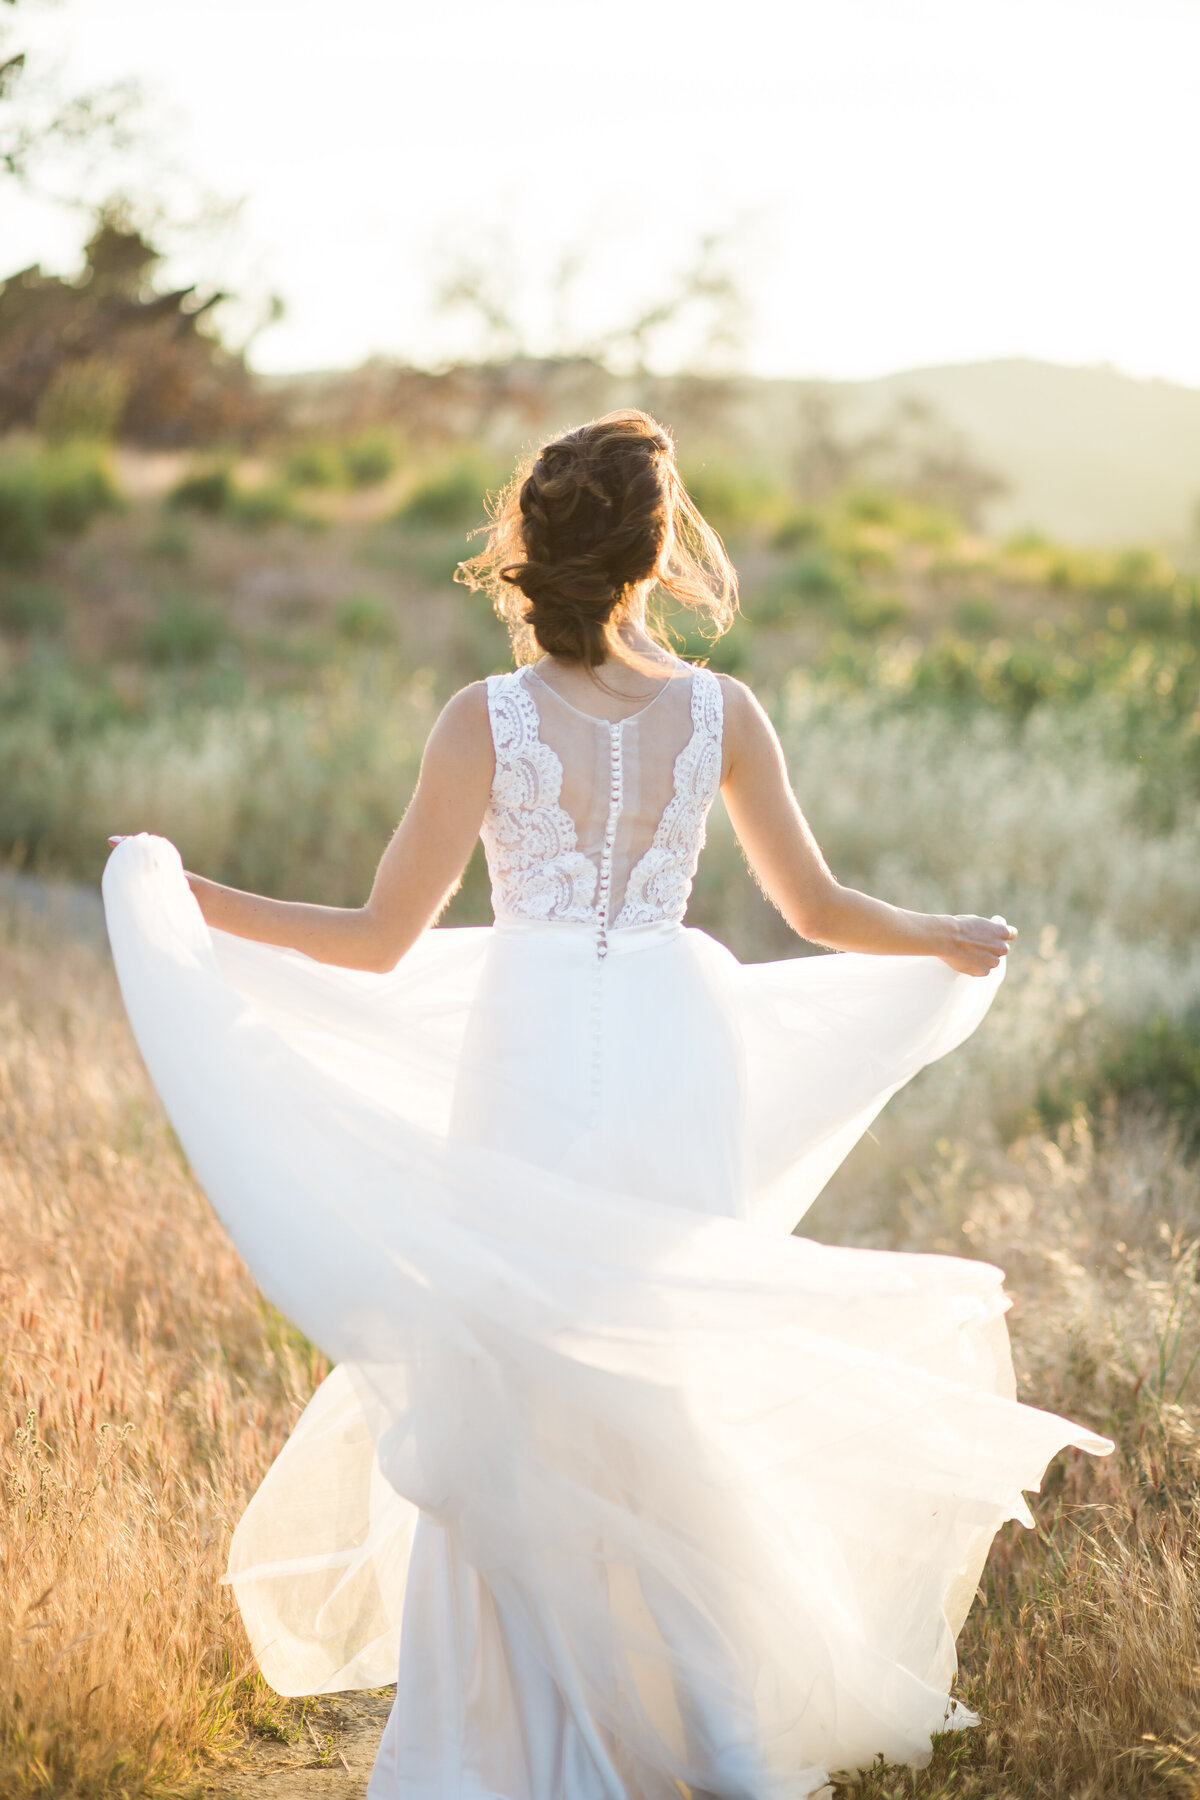 Bride swirls her wedding gown skirt as she walks through a field